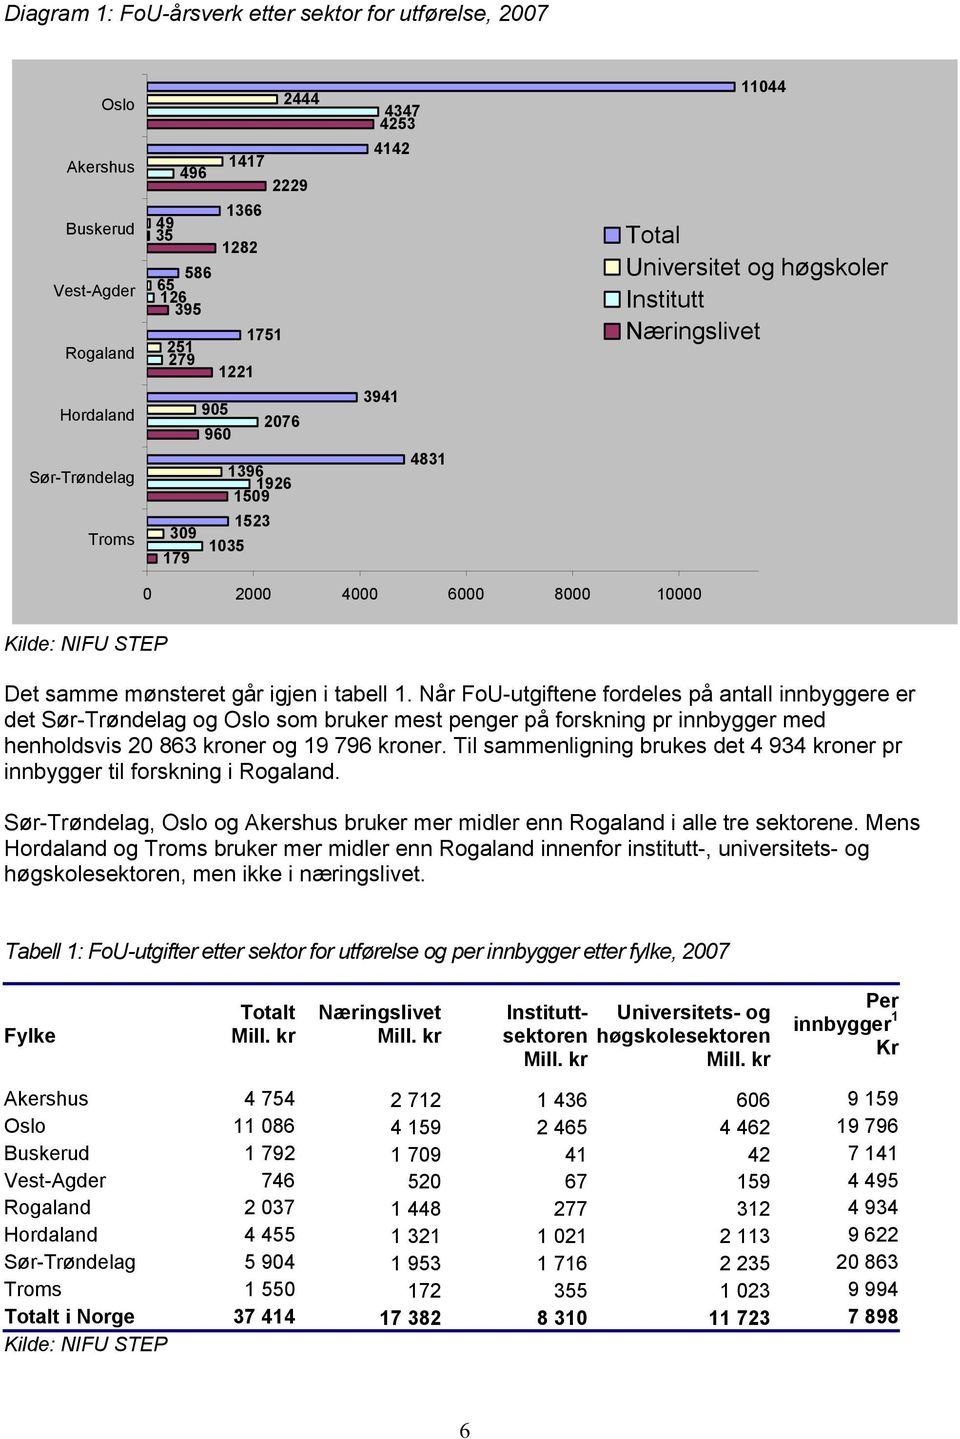 igjen i tabell 1. Når FoU-utgiftene fordeles på antall innbyggere er det Sør-Trøndelag og Oslo som bruker mest penger på forskning pr innbygger med henholdsvis 20 863 kroner og 19 796 kroner.